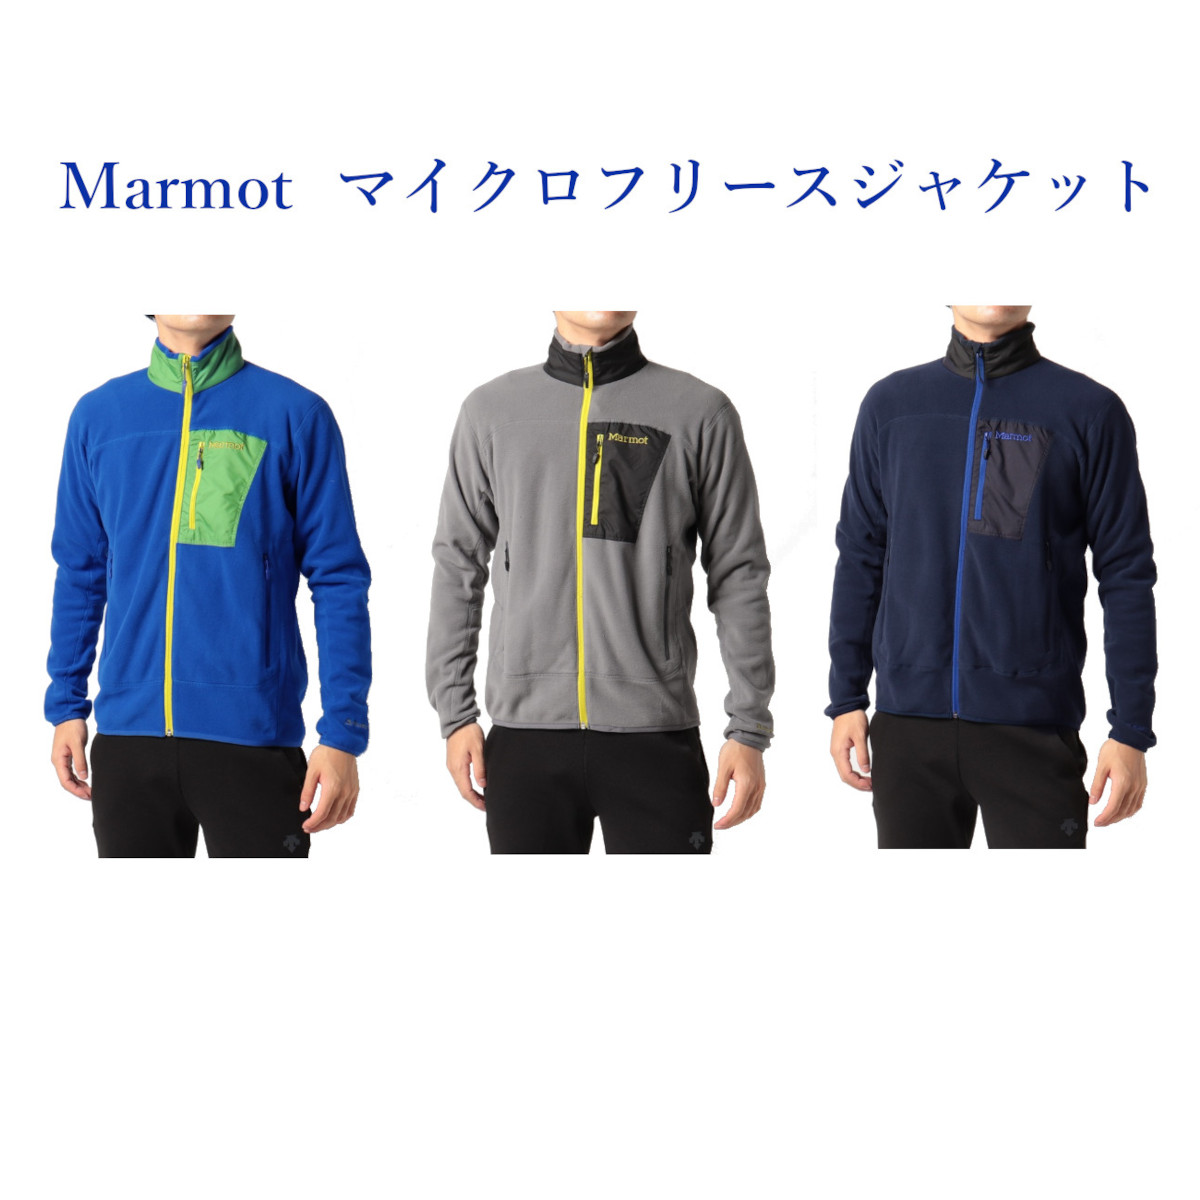 マーモット マイクロフリースジャケット Micro Fleece Jacket TOMSJL35 メンズ 2021AW | チトセスポーツ楽天市場店